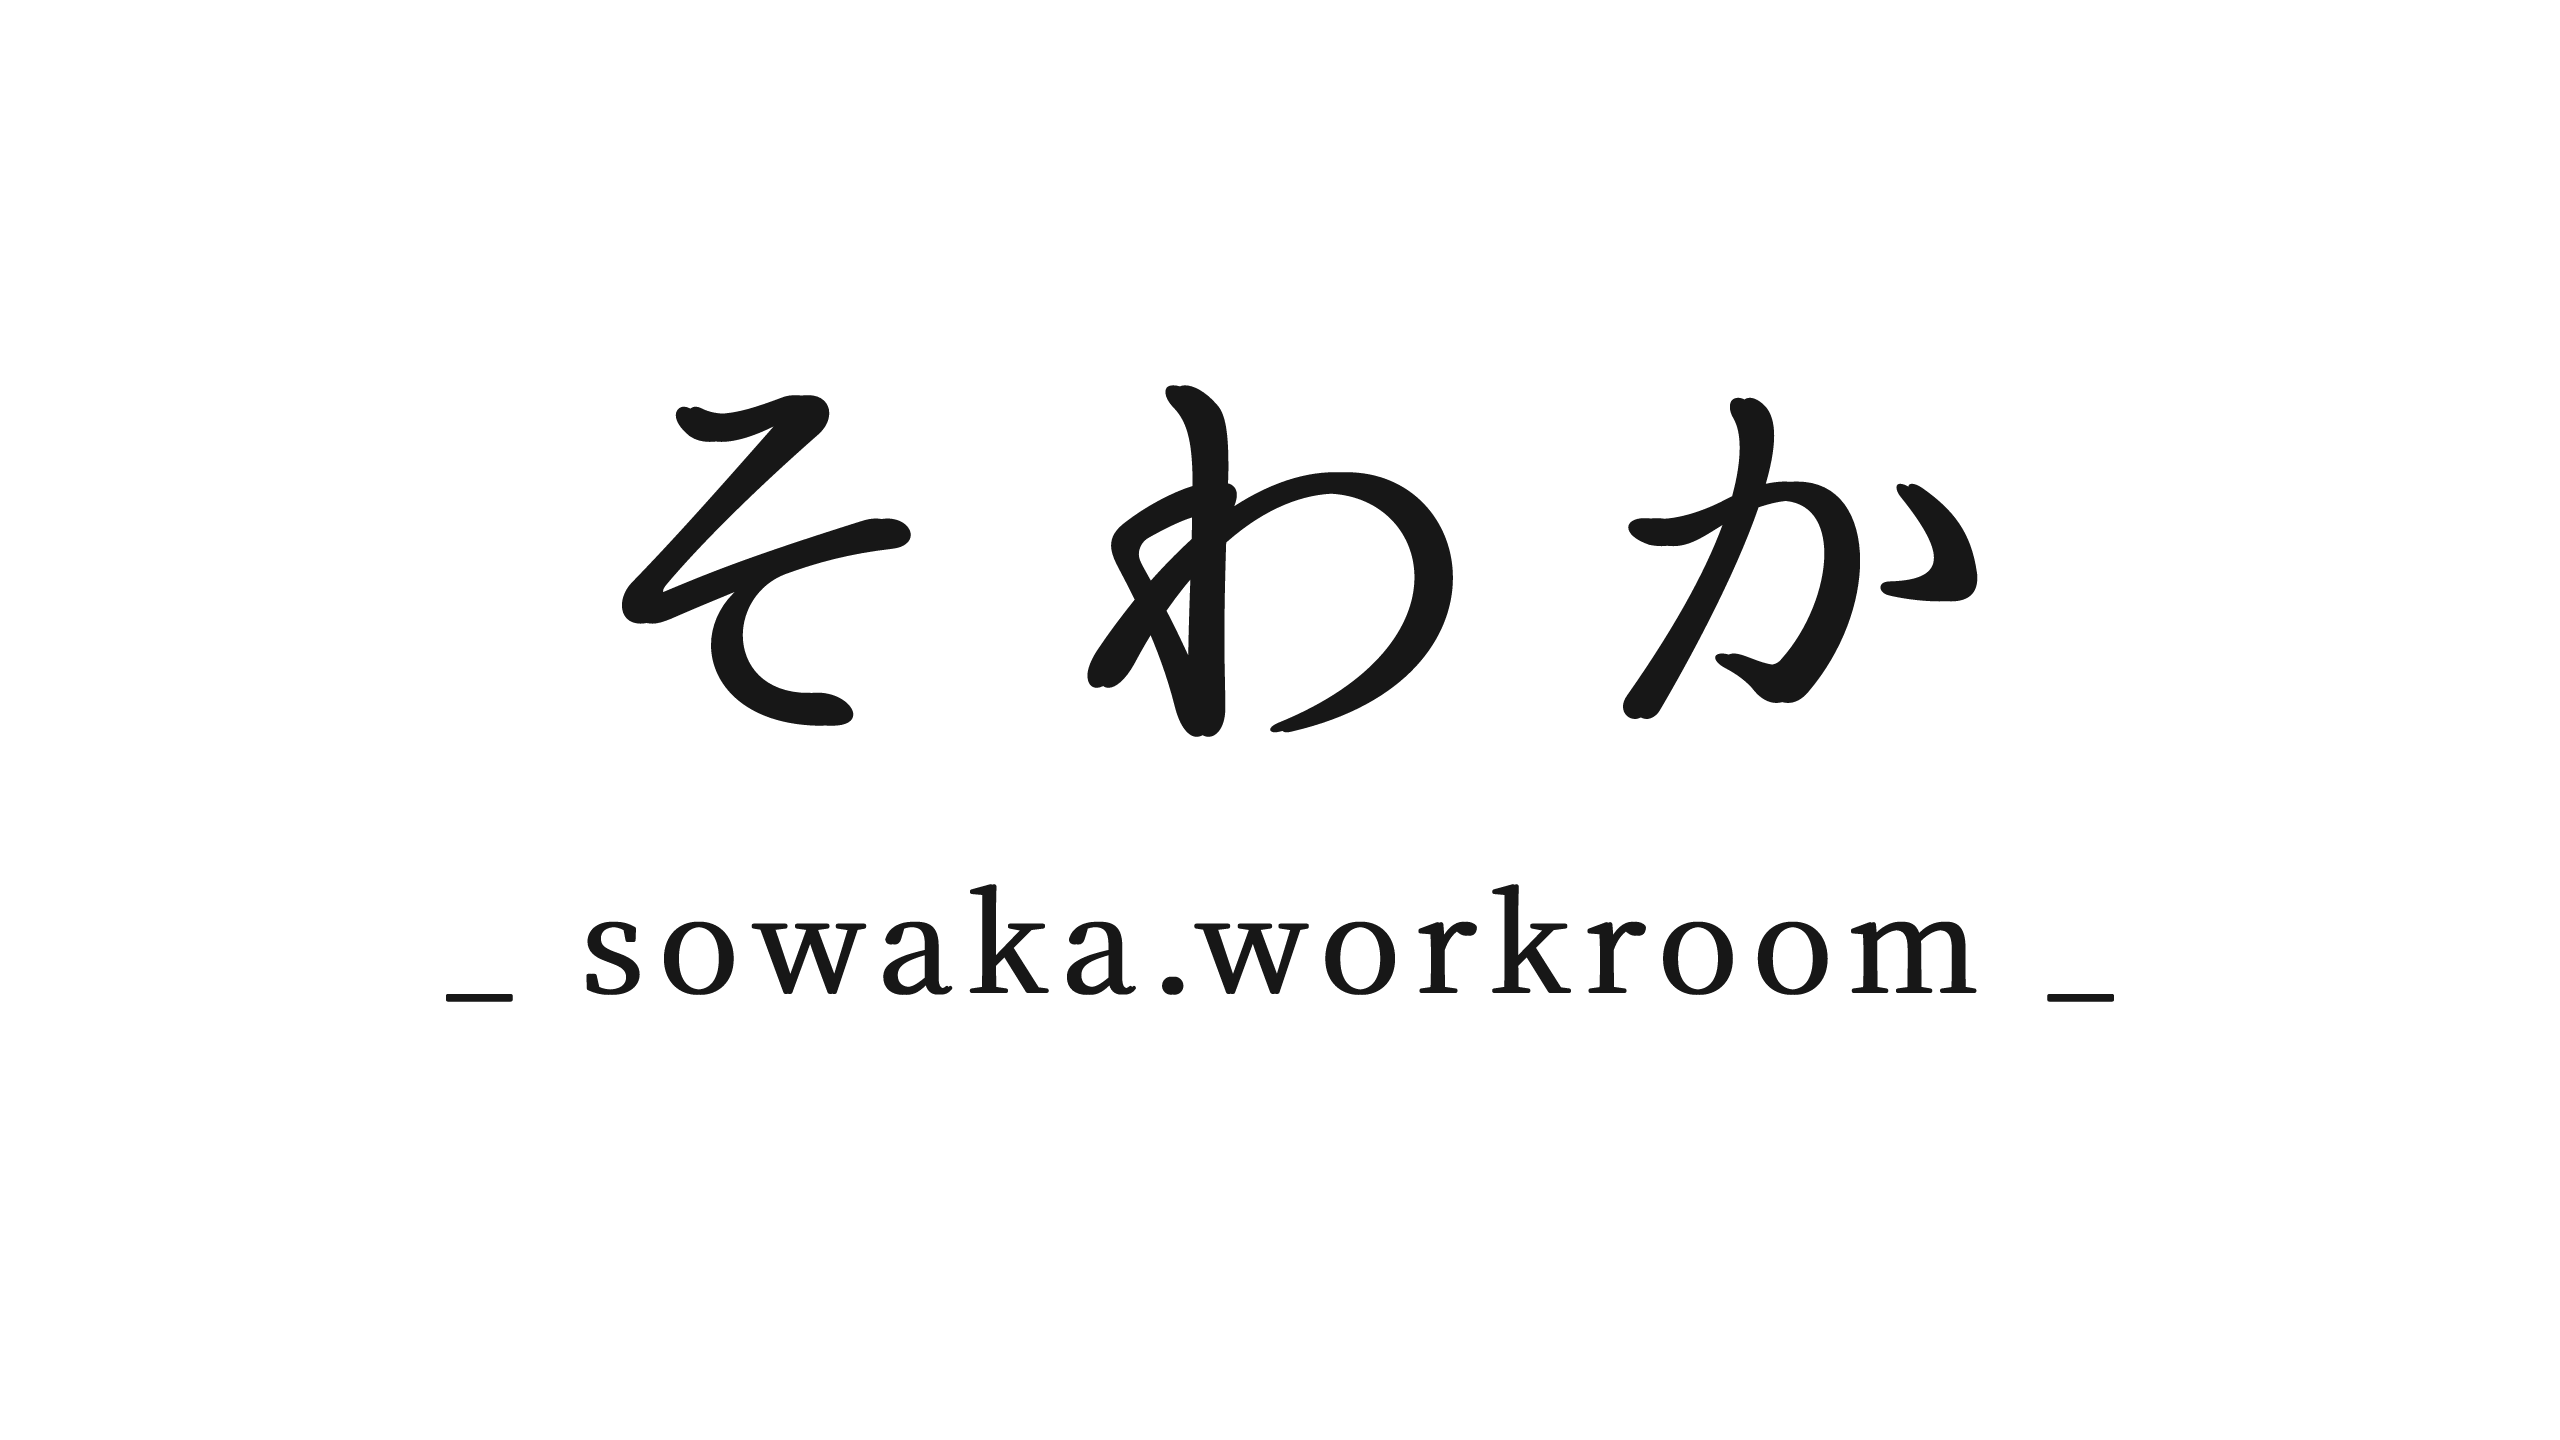 sowaka.workroom